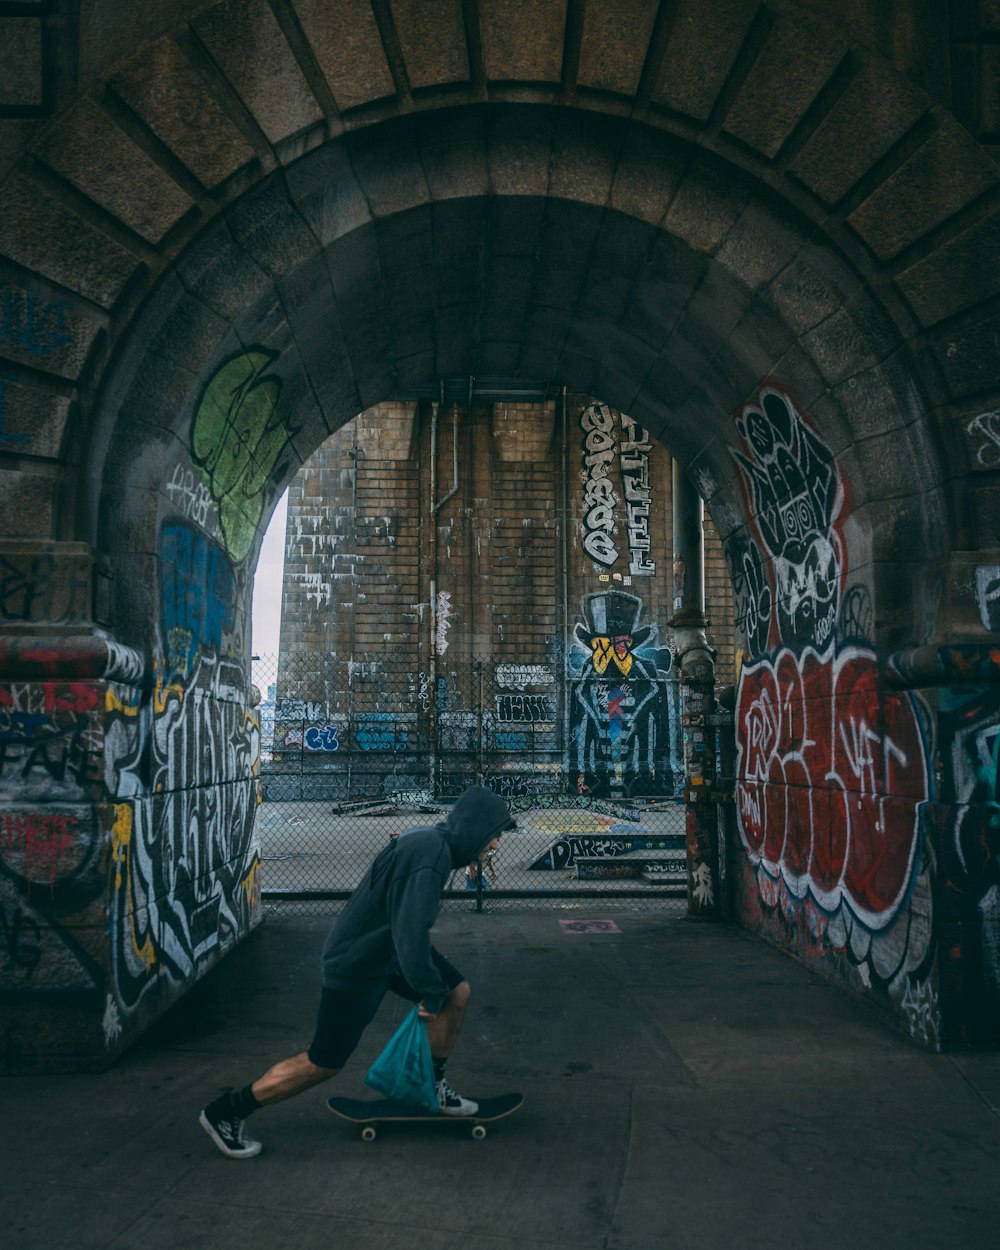 a man riding a skateboard through a tunnel covered in graffiti